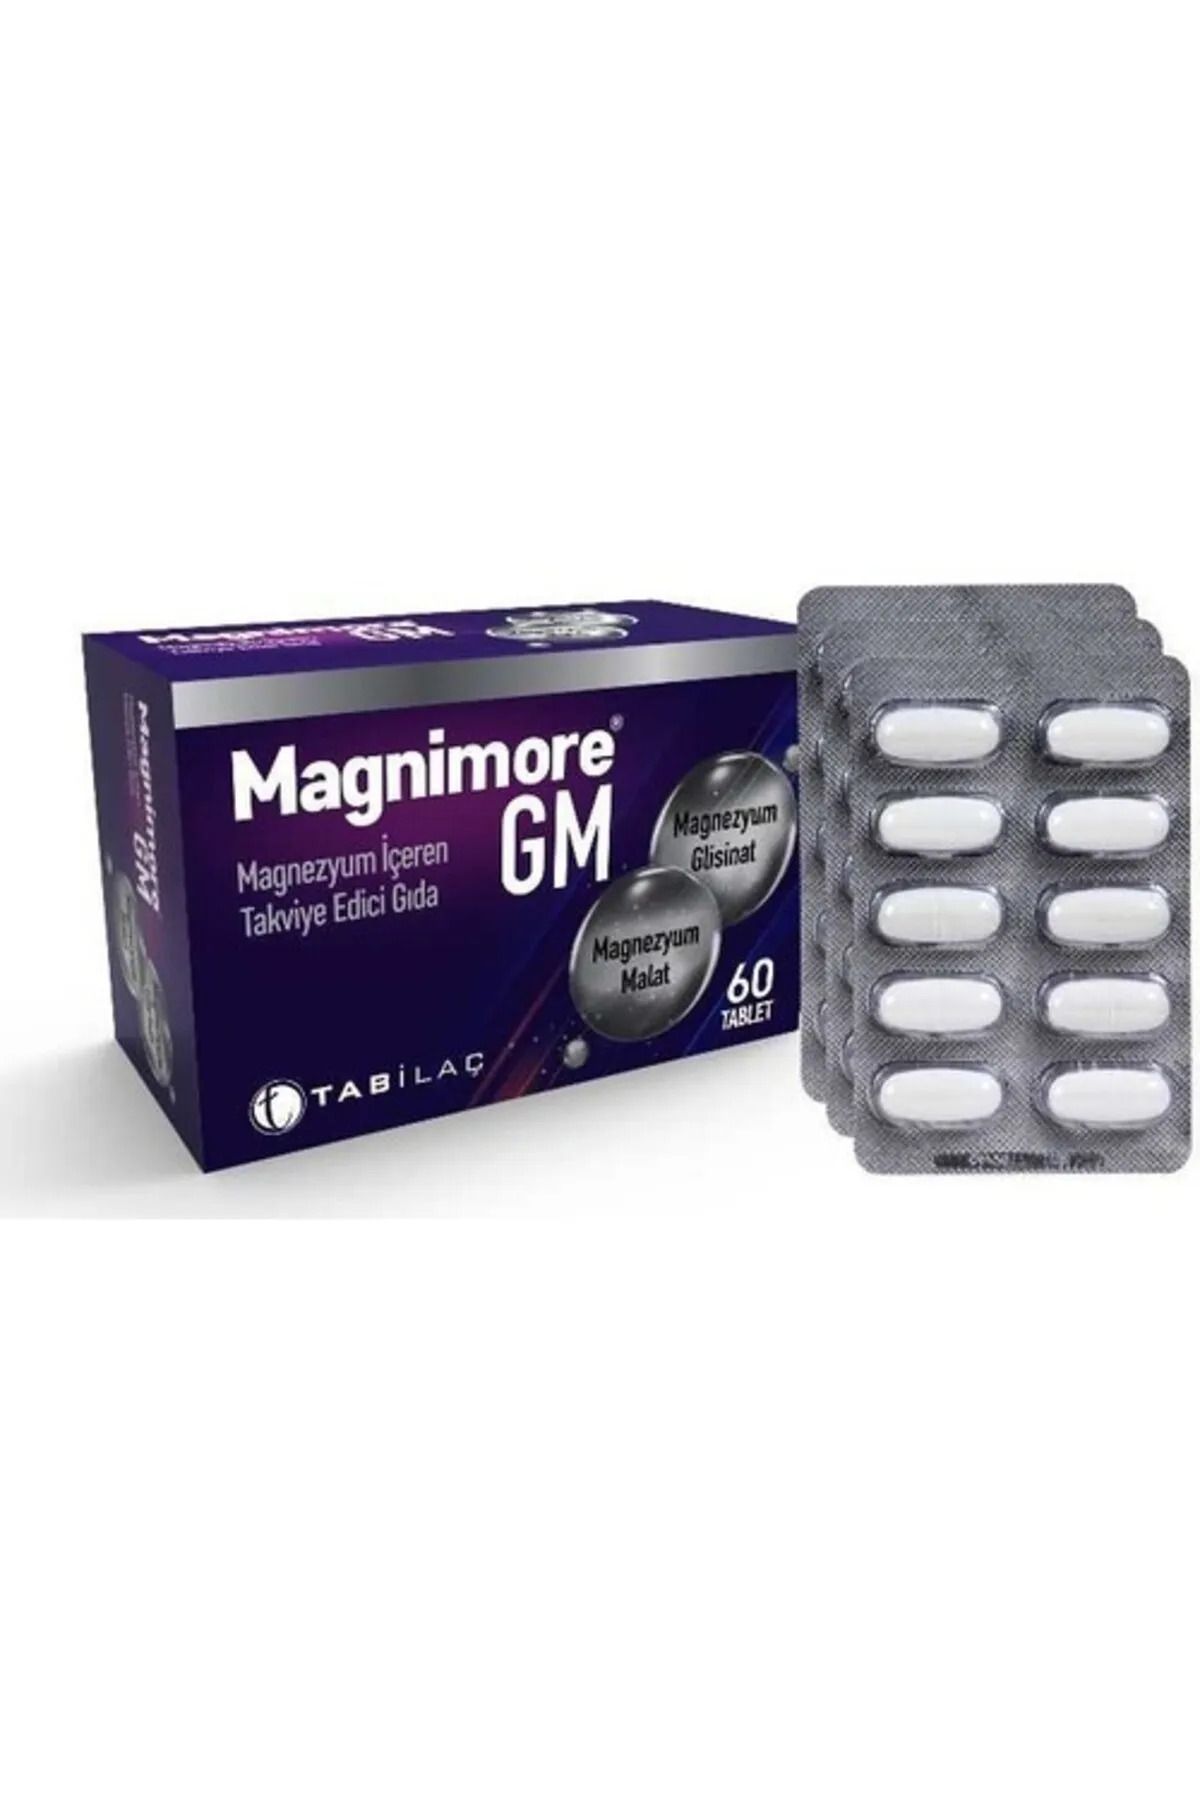 Tab İlaç Magnimore Gm Magnezyum içeren Takviye Edici Gıda